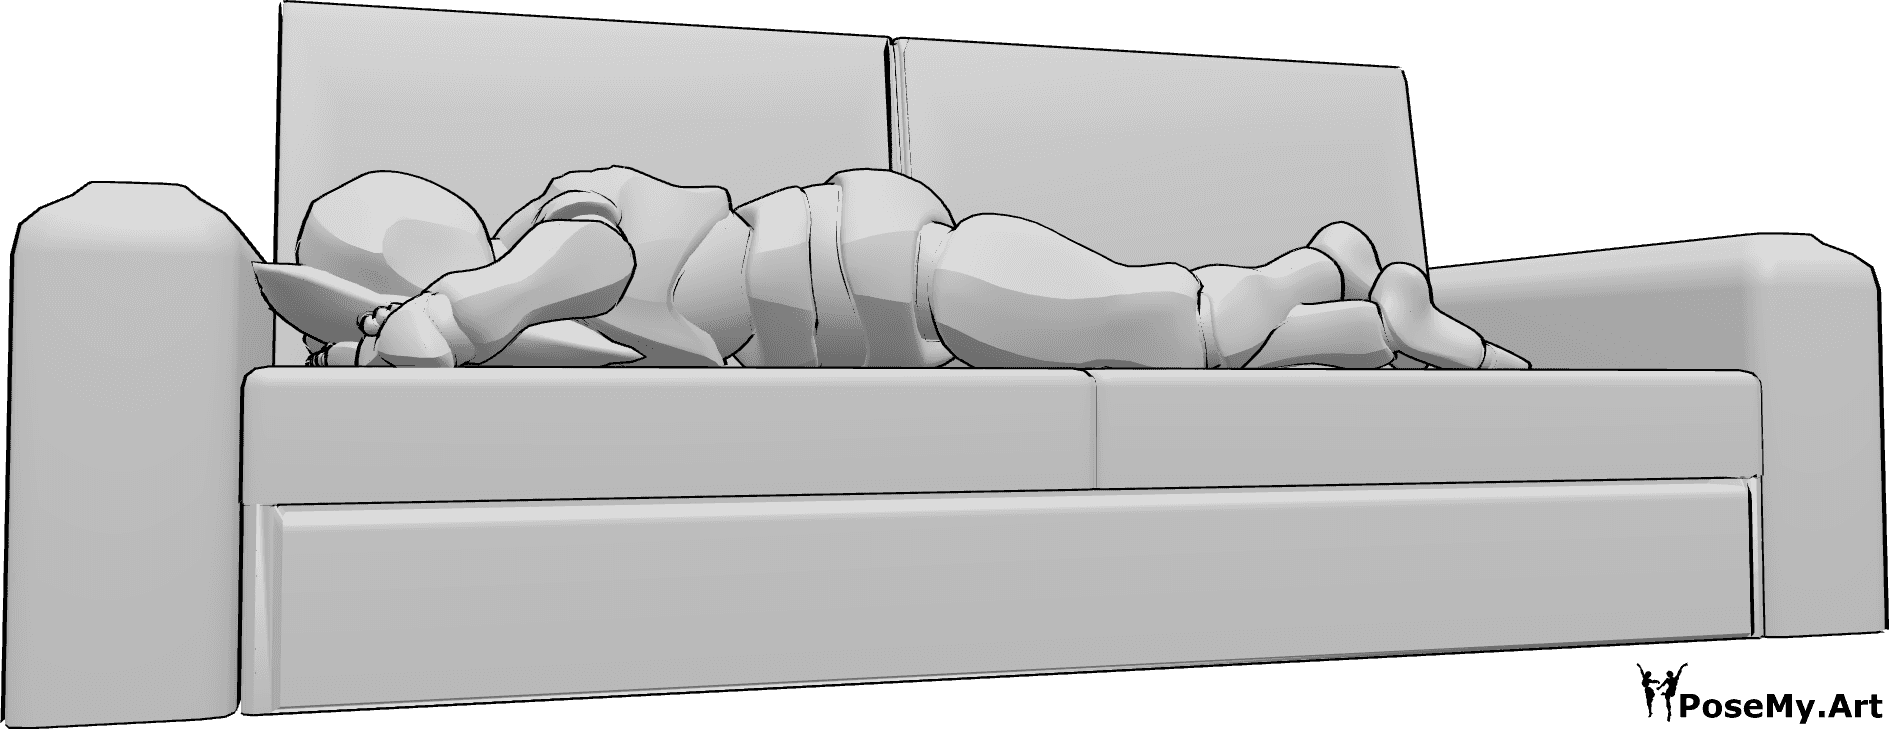 Référence des poses- Homme allongé sur un canapé - L'homme est allongé sur le ventre sur le canapé, la tête reposant sur un oreiller.